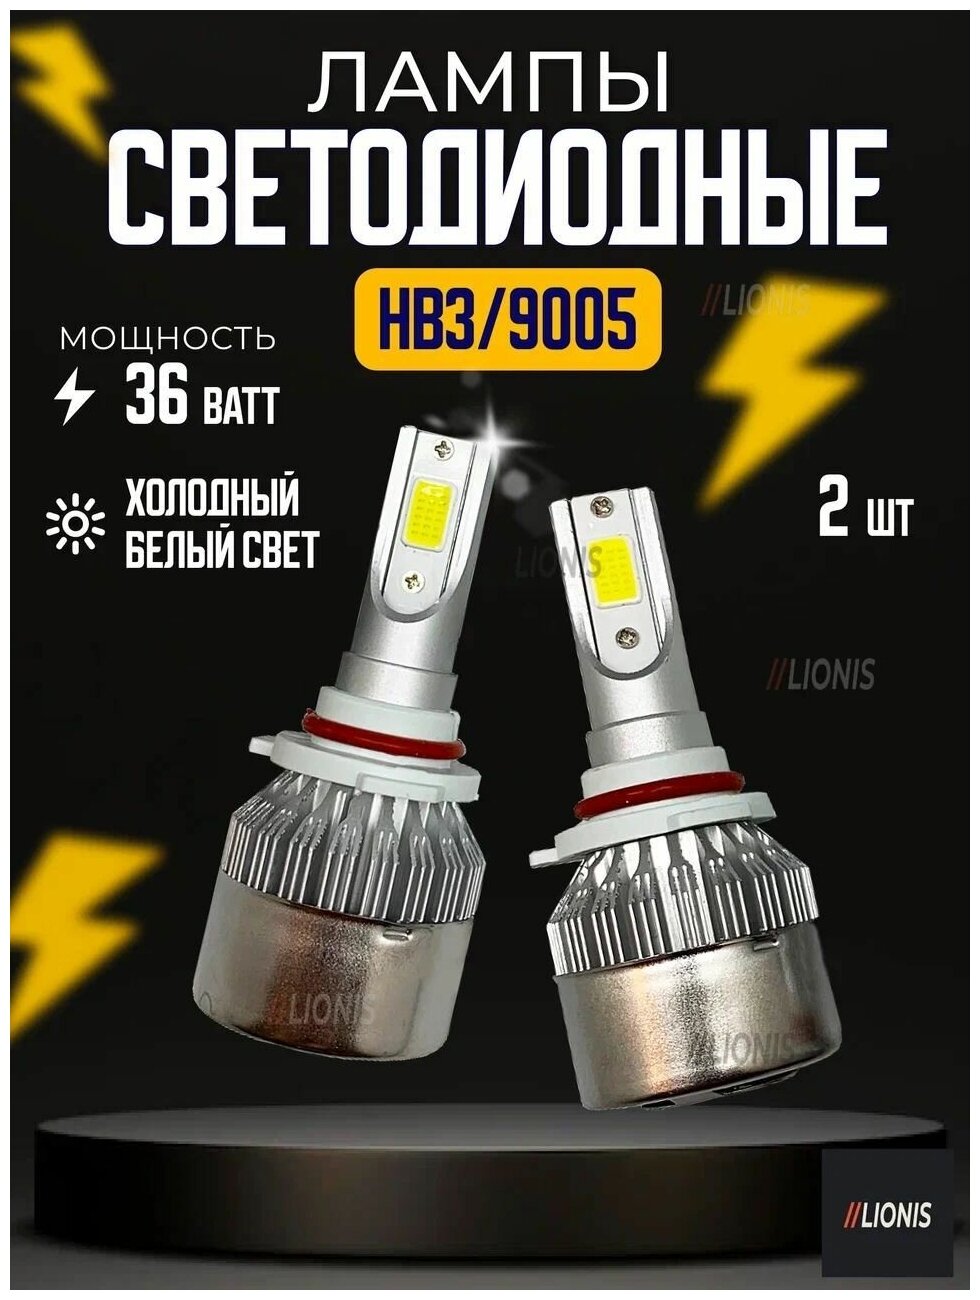 Светодиодные лампы LED для авто C6 цоколь HB3 9005 25Вт 12-24В автосвет комплект 2шт.